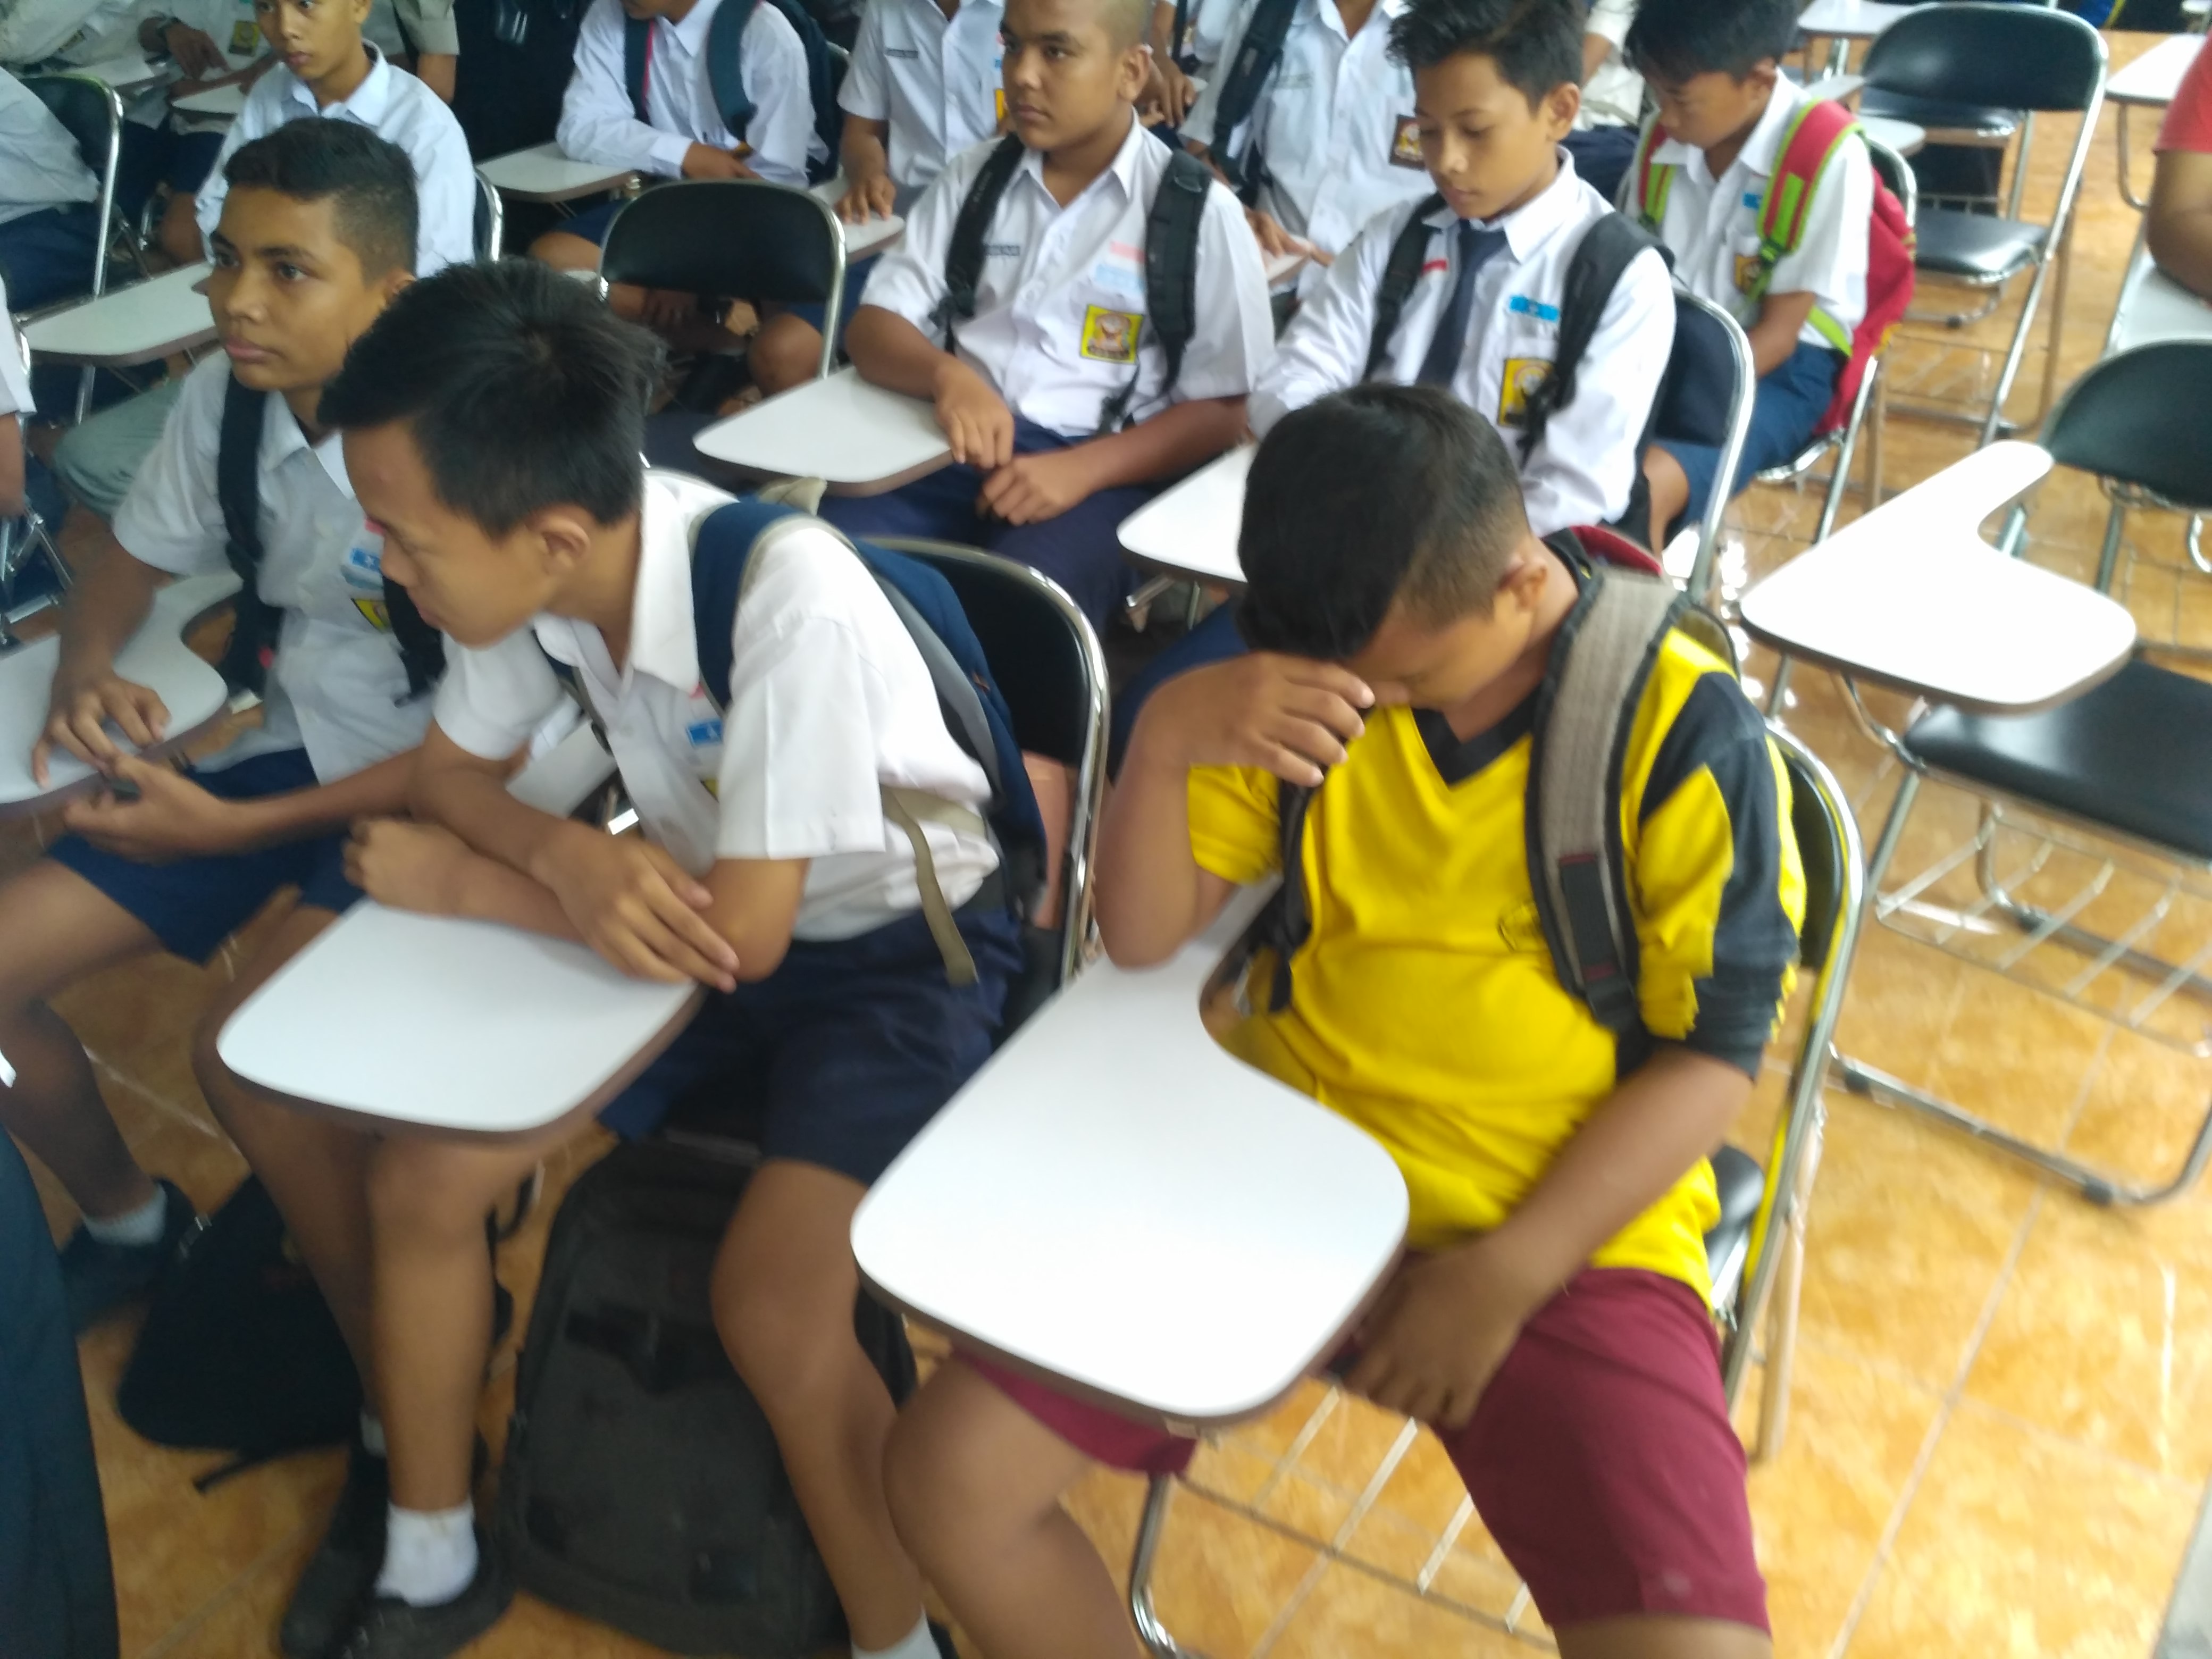 Cabut Sekolah, 58 Pelajar Diangkut Dari Warnet, 1 Pelajar Masih SD.